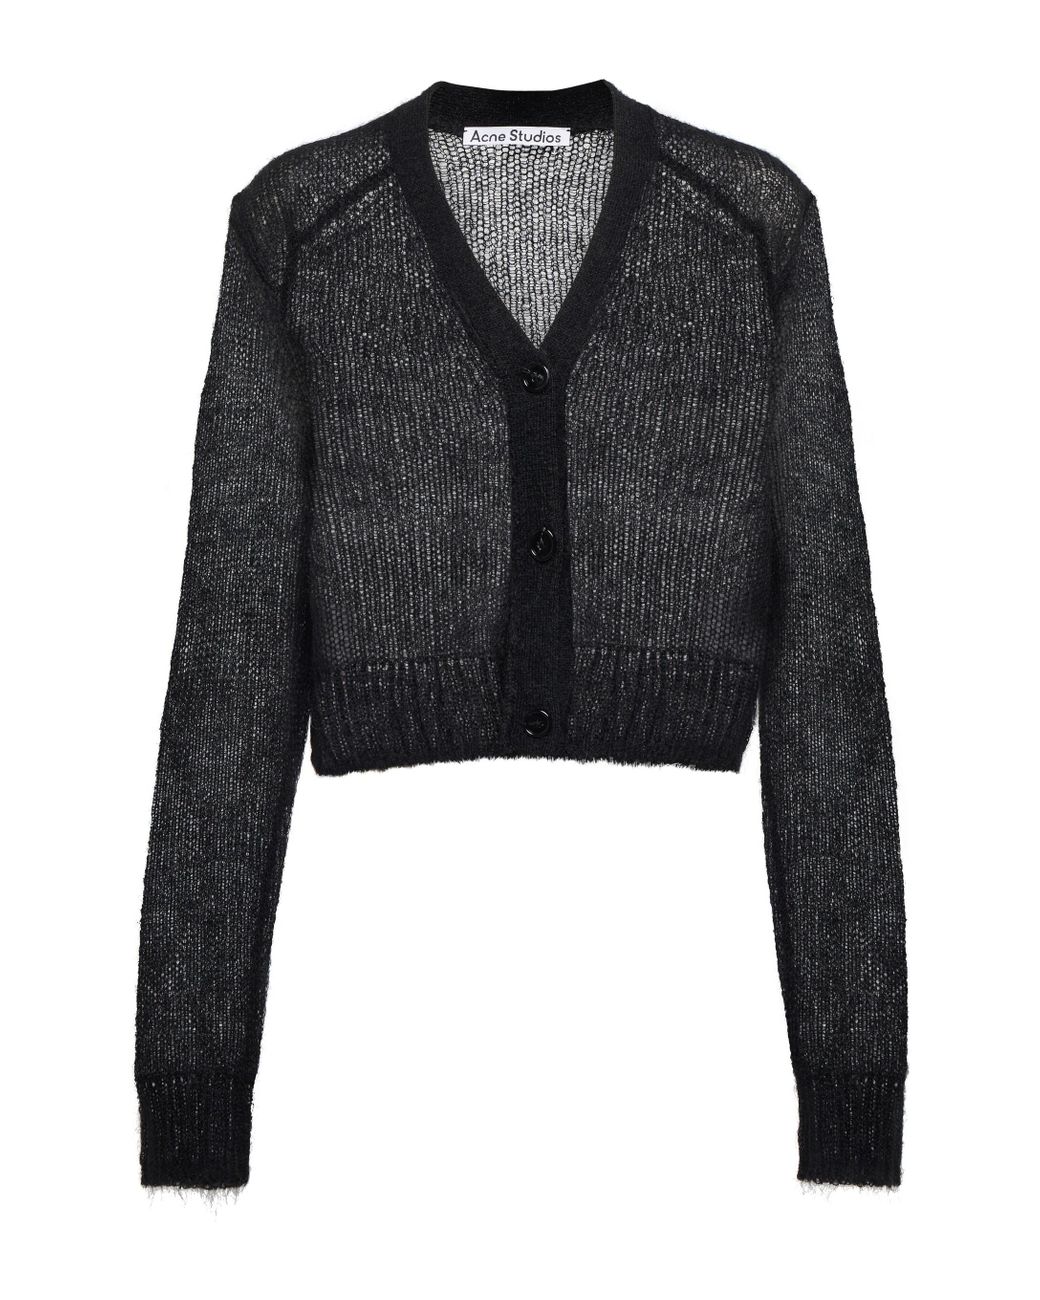 Acne Studios Wolle Cardigan aus einem Mohairgemisch in Schwarz Damen Bekleidung Pullover und Strickwaren Strickjacken 